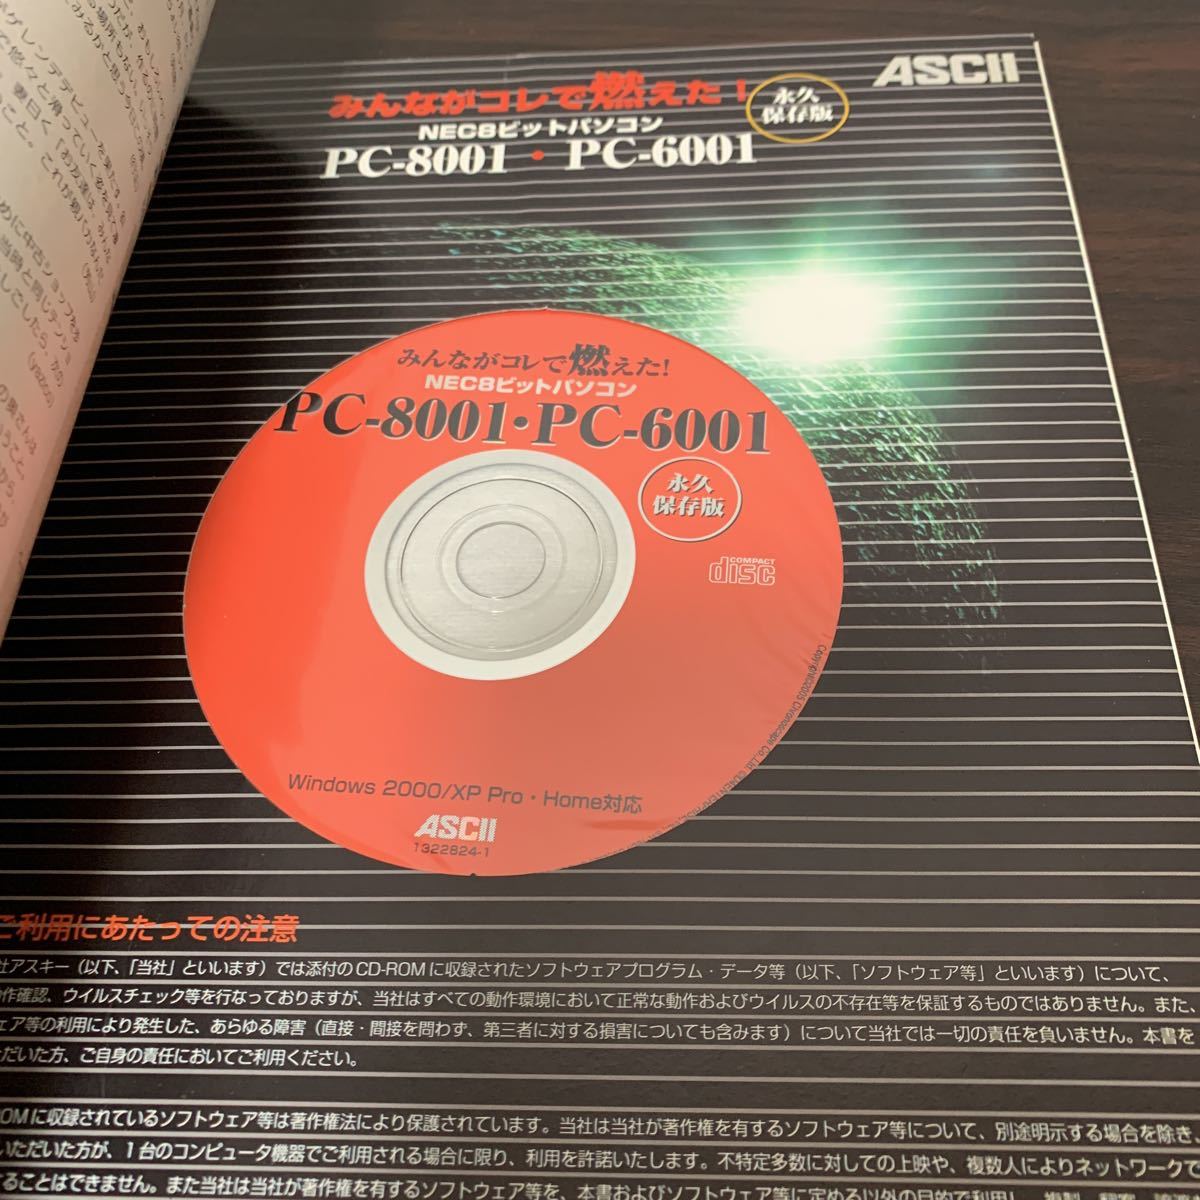 永久保存版 みんながコレで燃えた NEC8ビットパソコン PC-8001 PC-6001 CD-ROM付 袋とじは未開封